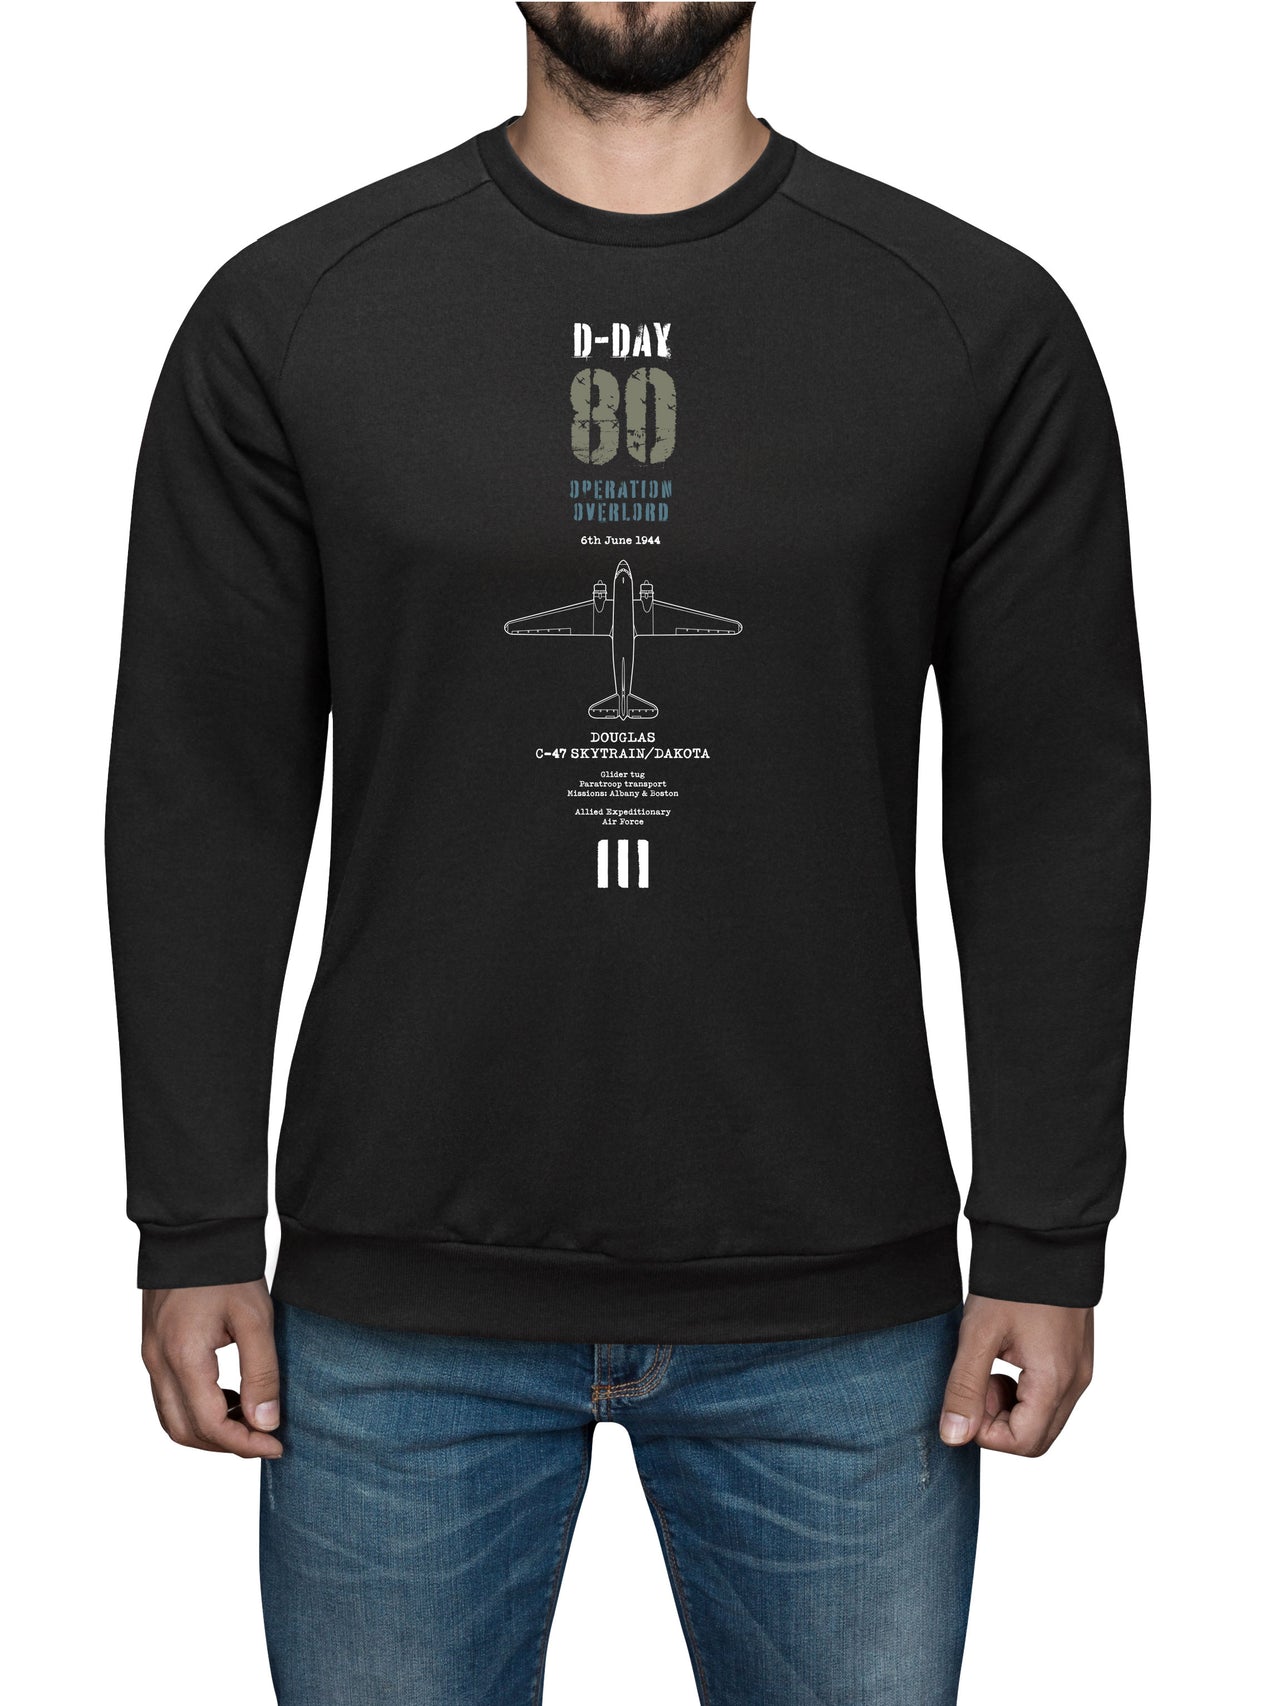 D-Day C-47 Skytrain - Sweat Shirt